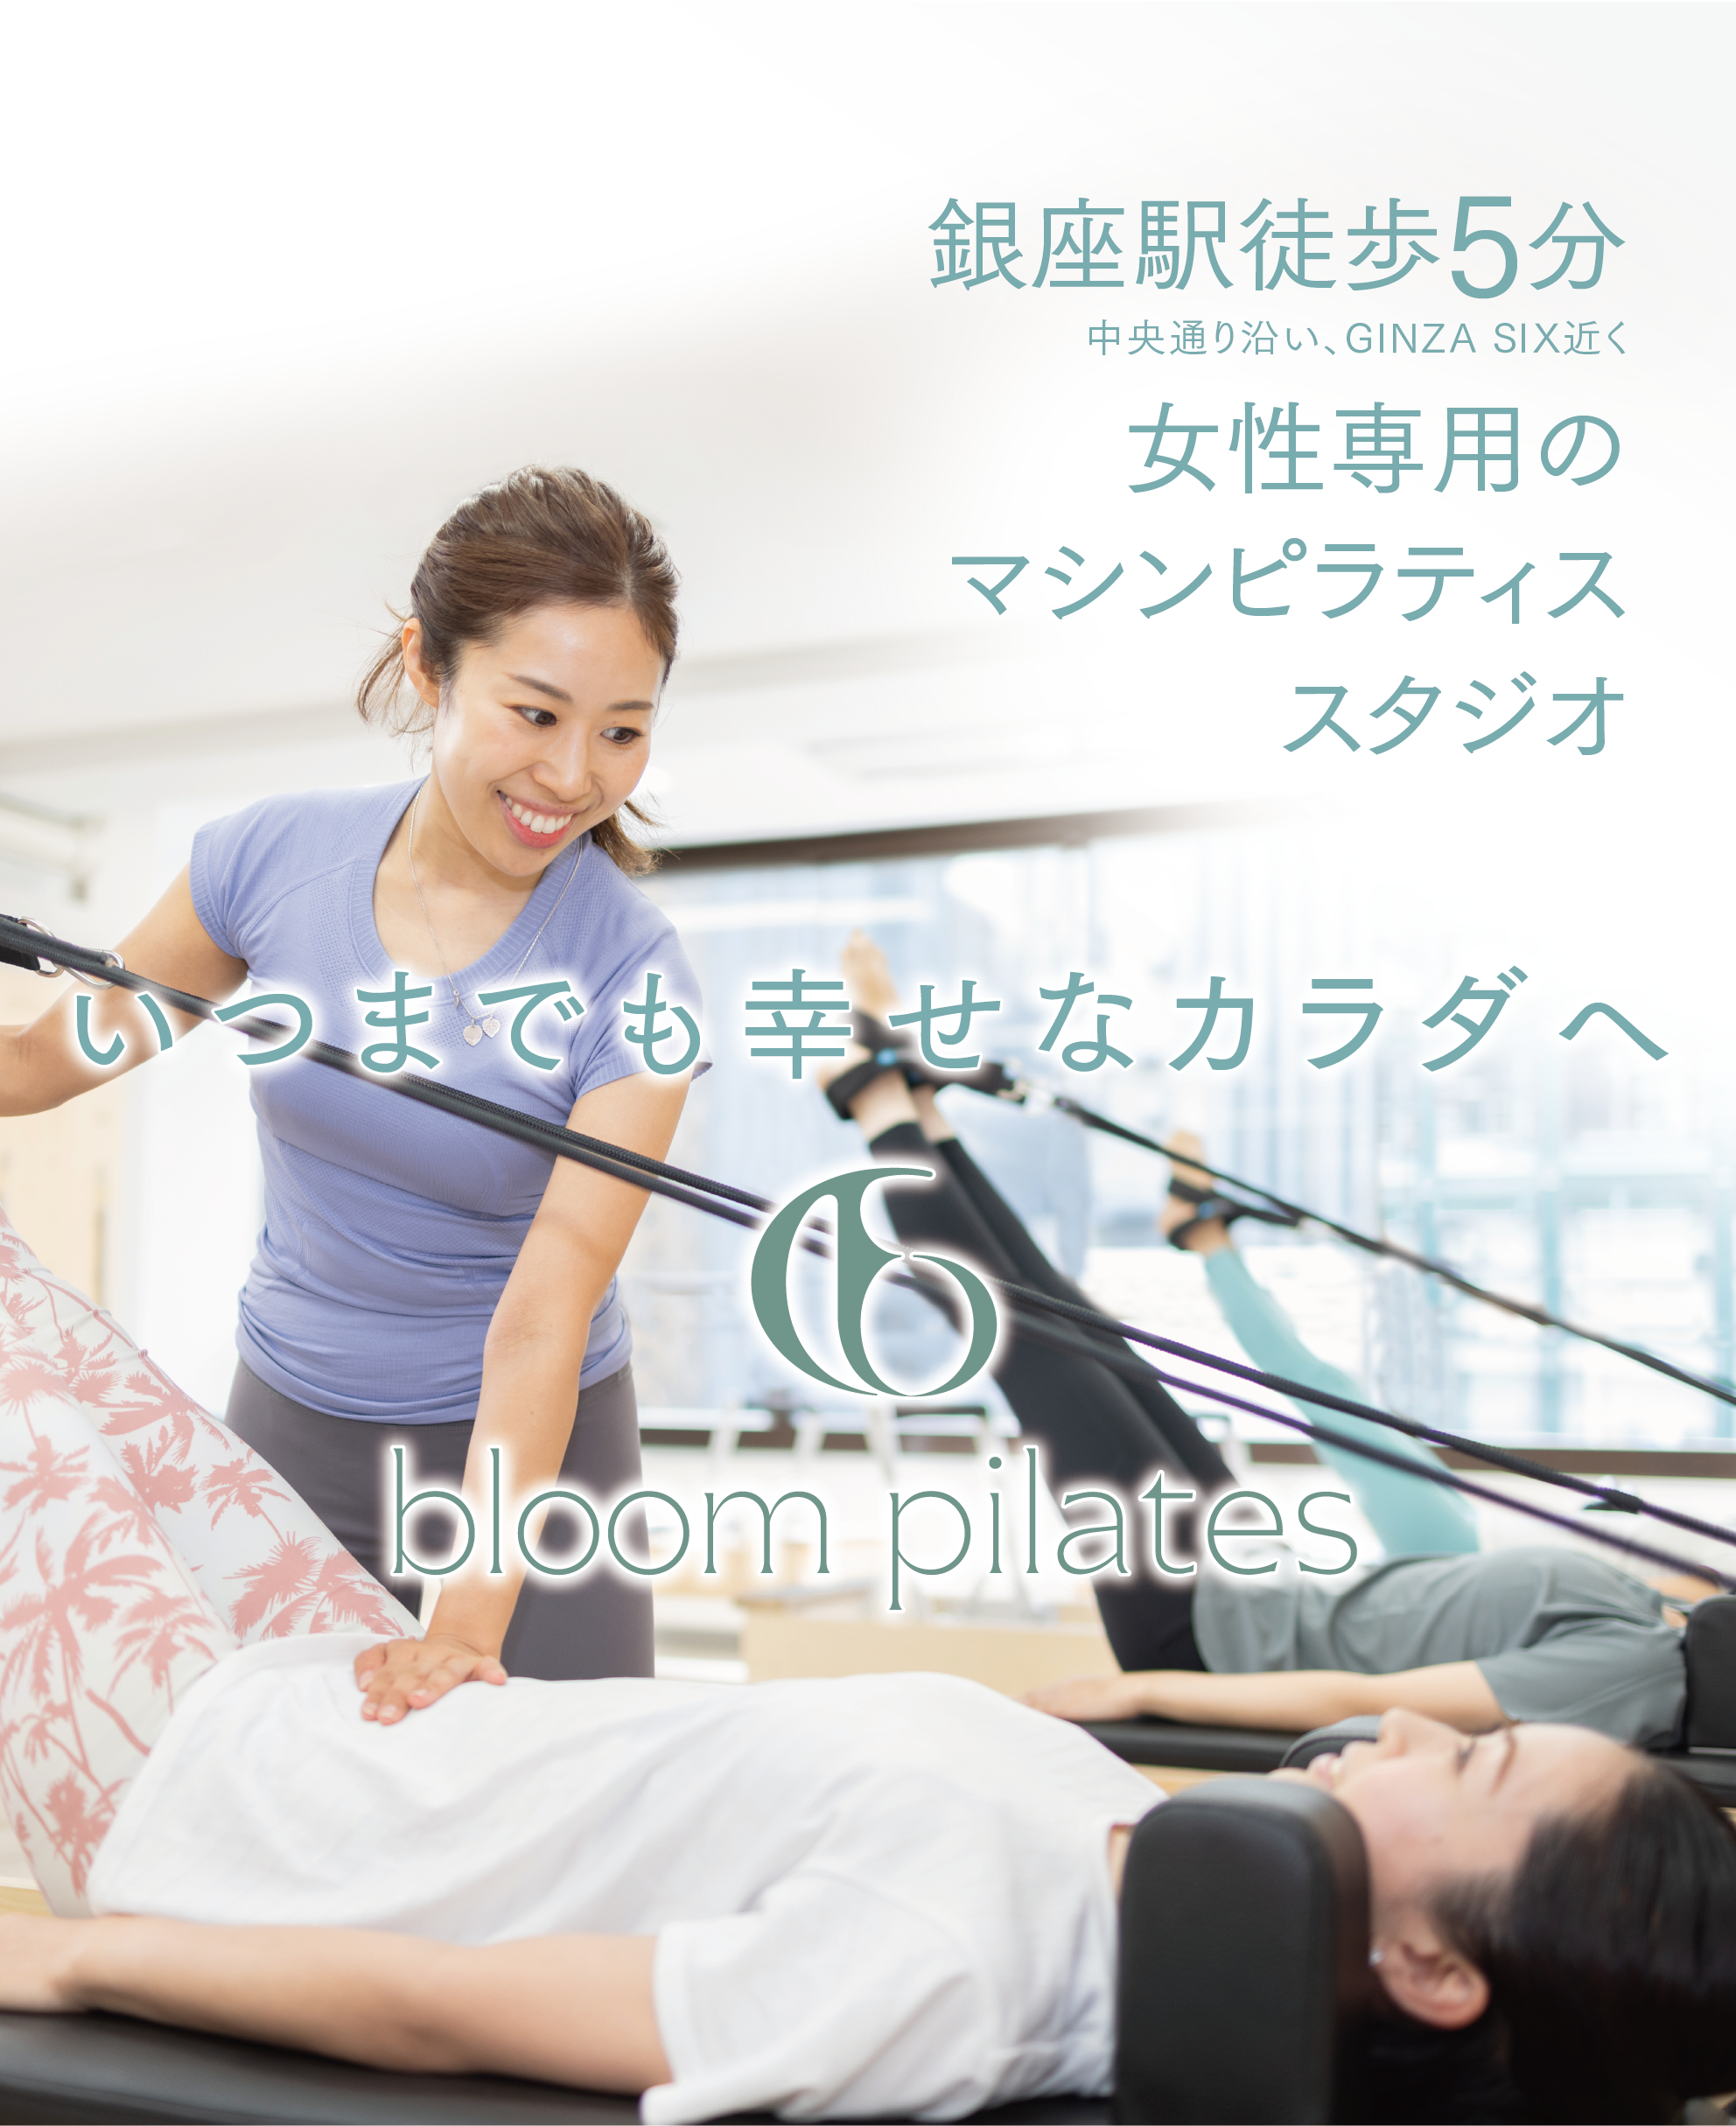 銀座駅徒歩5分・女性専用のマシンピラティススタジオ・いつまでも幸せなカラダへ・bloom pilates